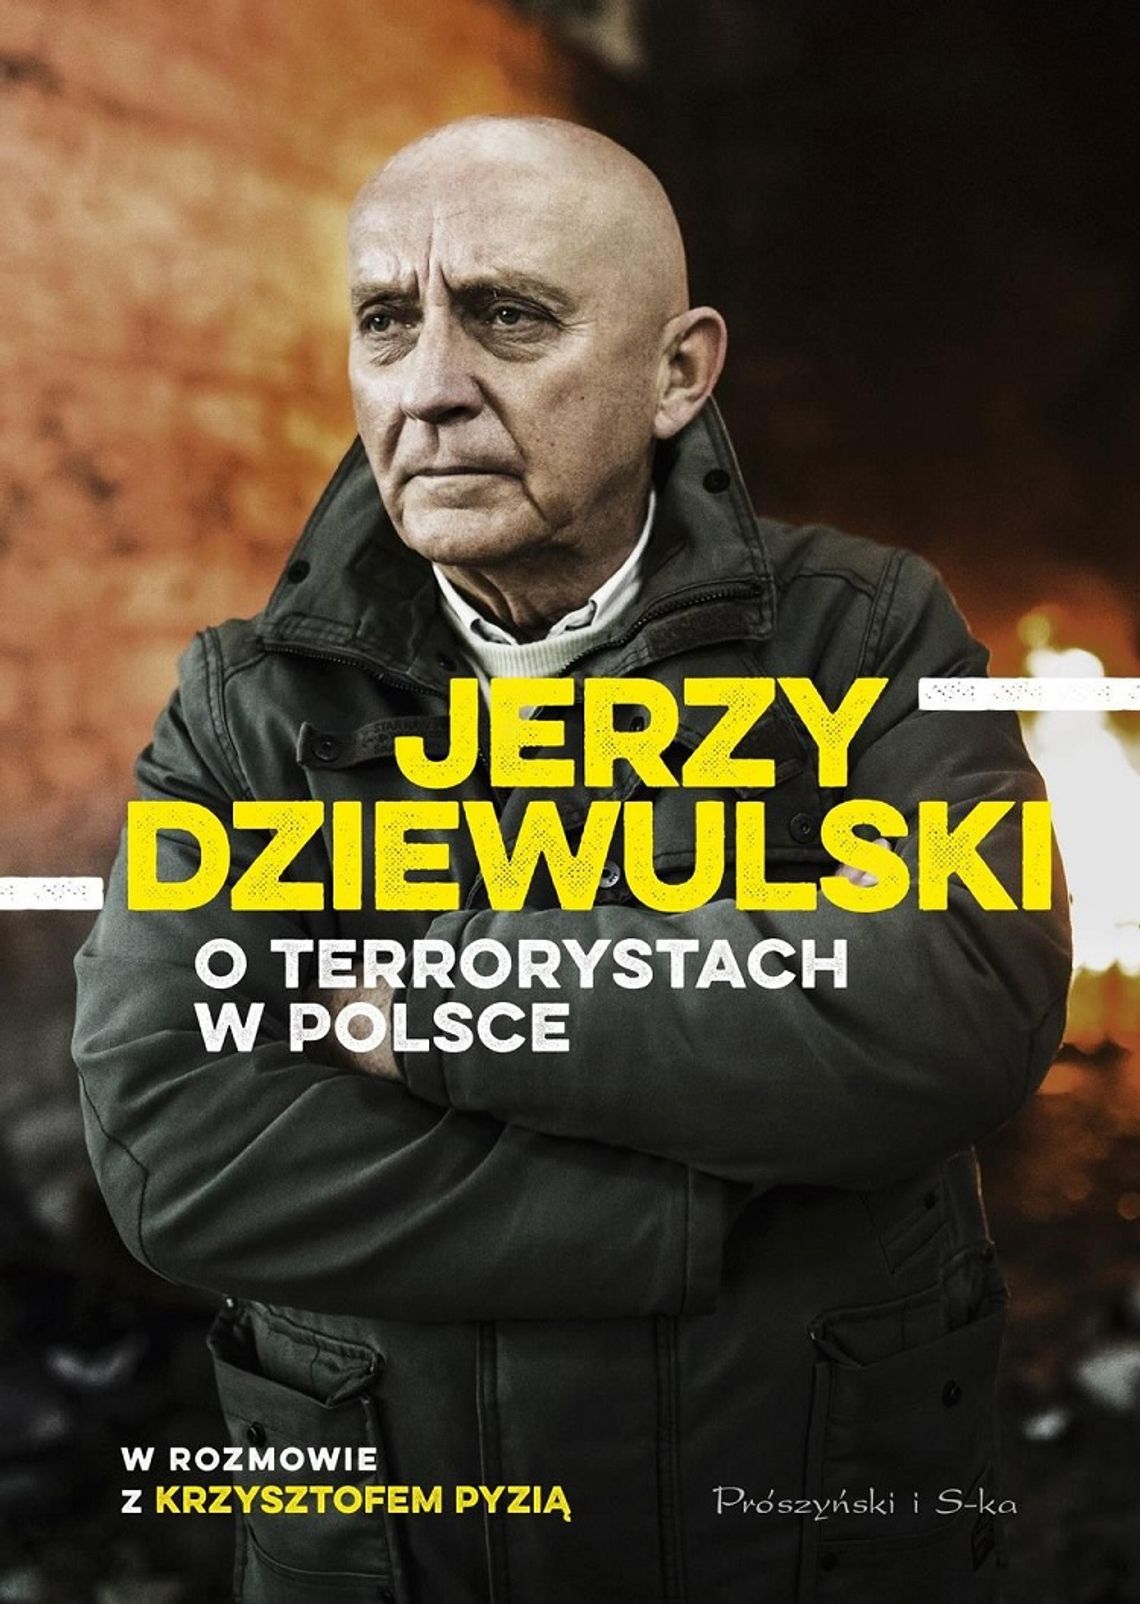 Krzysztof Pyzia, Jerzy Dziewulski "Jerzy Dziewulski o terrorystach w Polsce"; wyd. Prószyński i S-ka